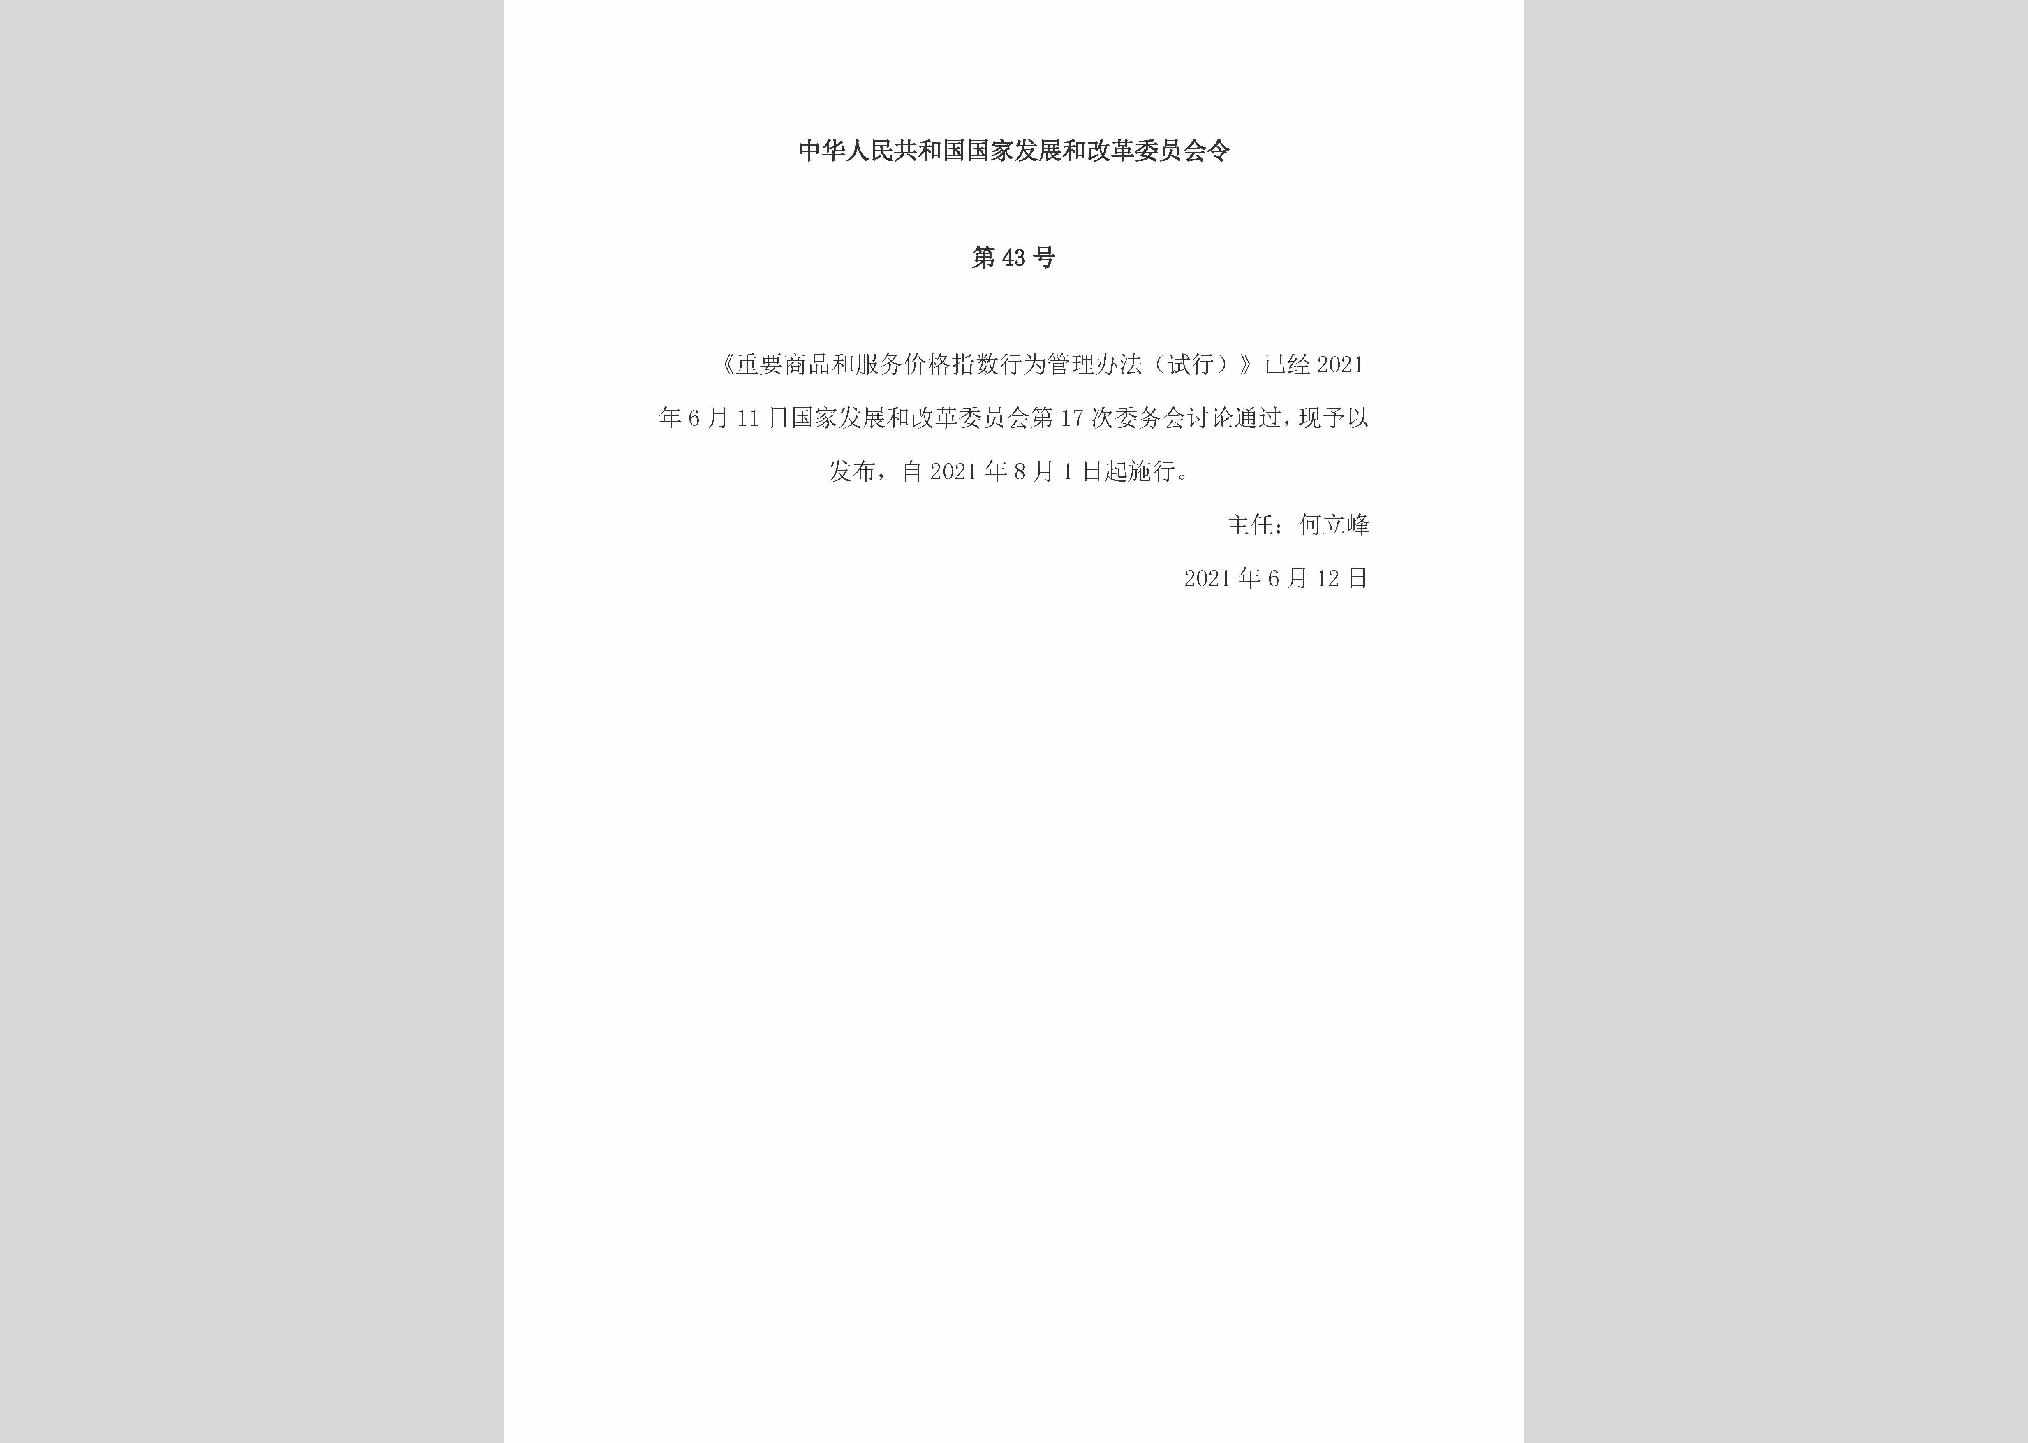 中华人民共和国国家发展和改革委员会令第43号：重要商品和服务价格指数行为管理办法（试行)